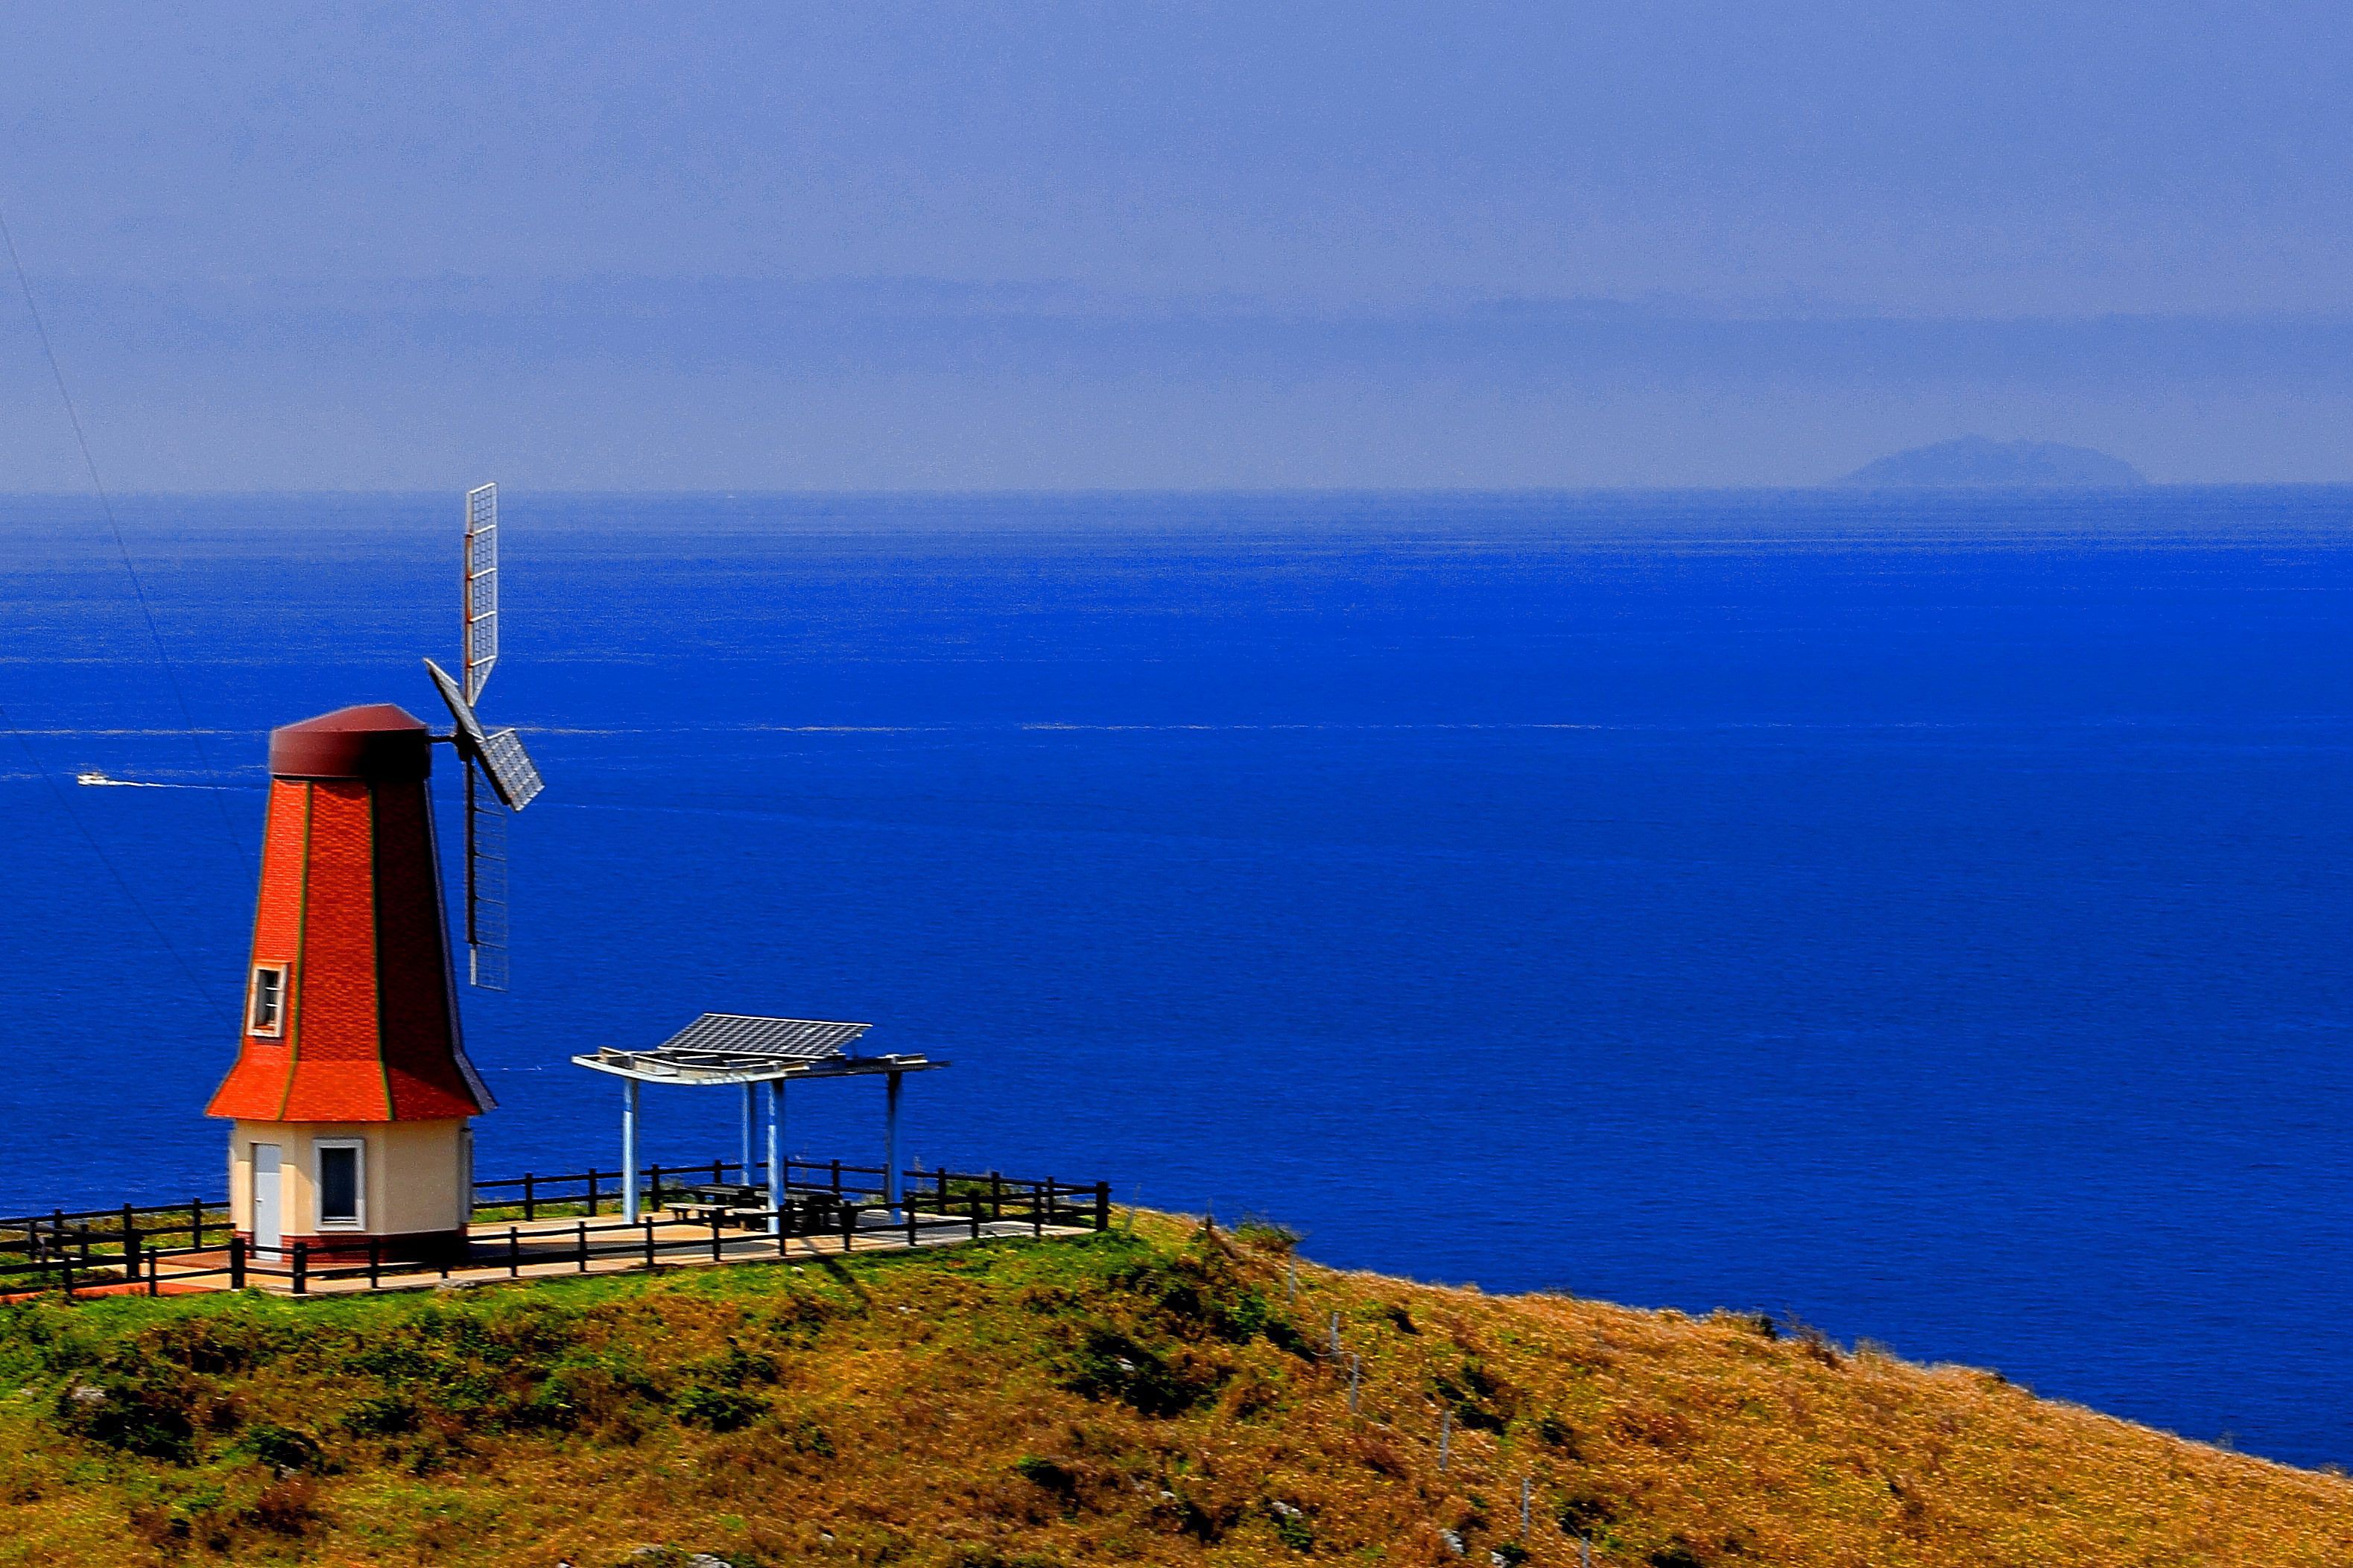 宗像市大島にある風車展望所で撮影された写真